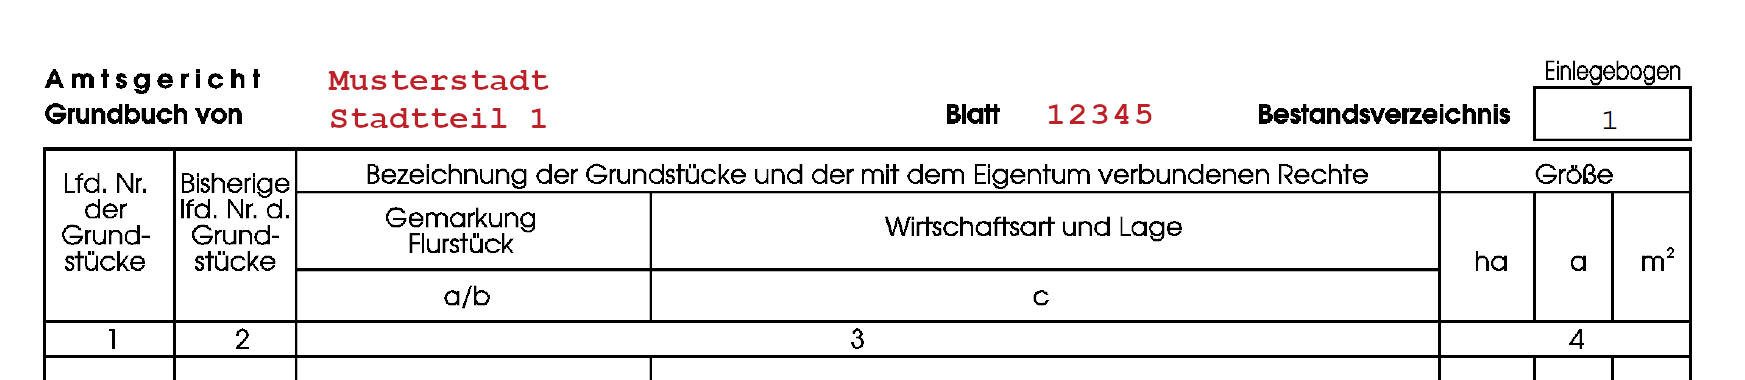 Grundbuchblattnummer Beispiel. (Grundbuchblattnummer 12345 von "Musterstadt / Stadtteil 1")